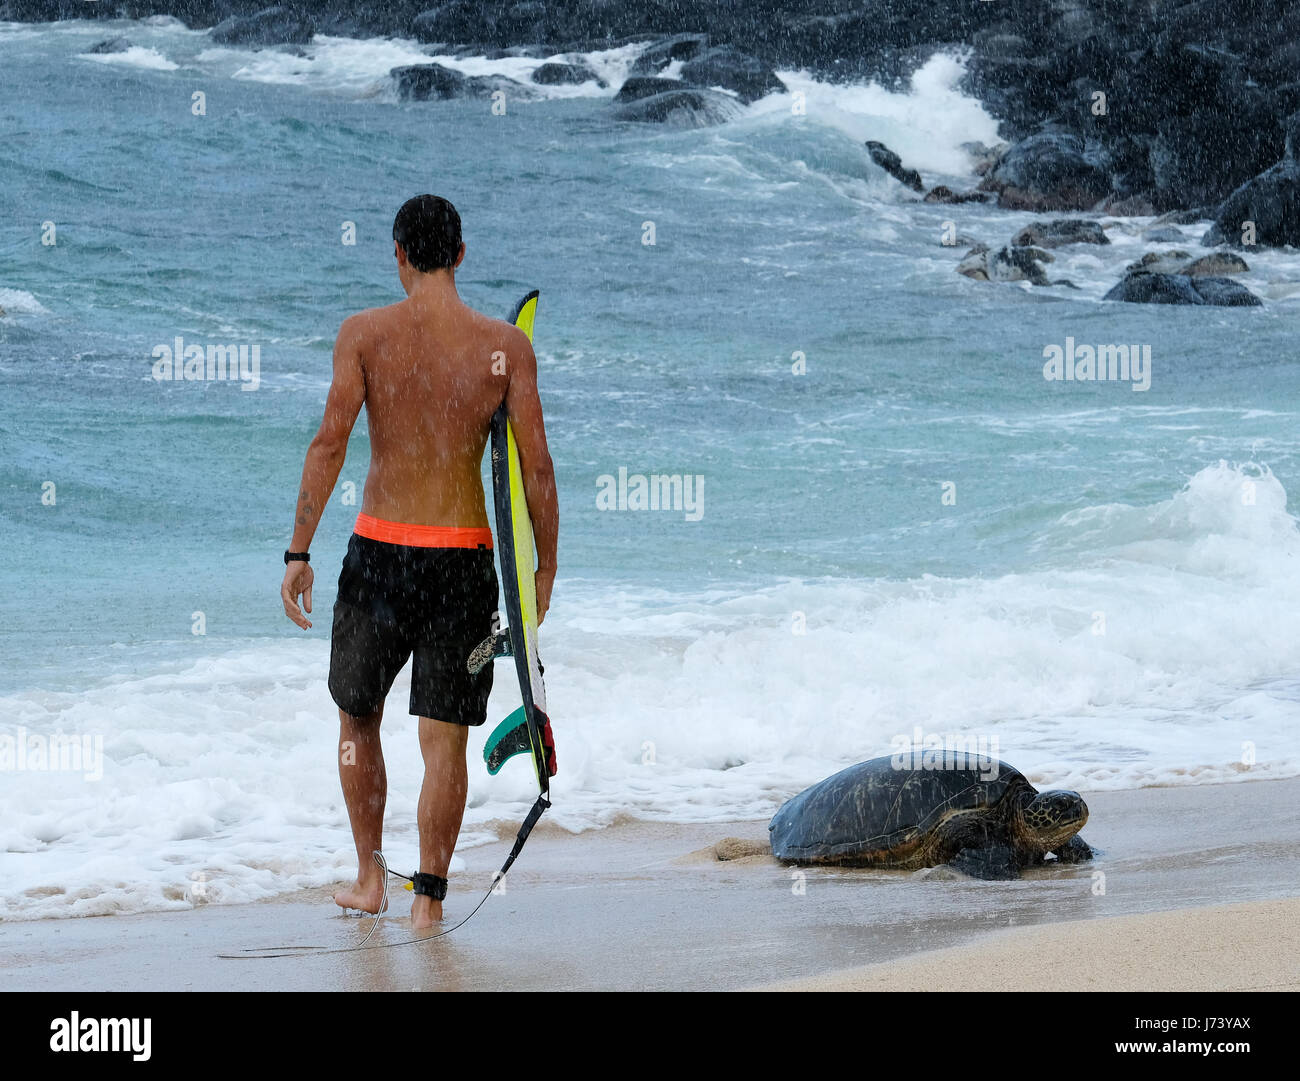 Eine Surfer geht vorbei an einem Hawaiian grünen Meeresschildkröte an Land kommen am Hookipa Beach Park, Paia, Maui, Hawaii. Stockfoto